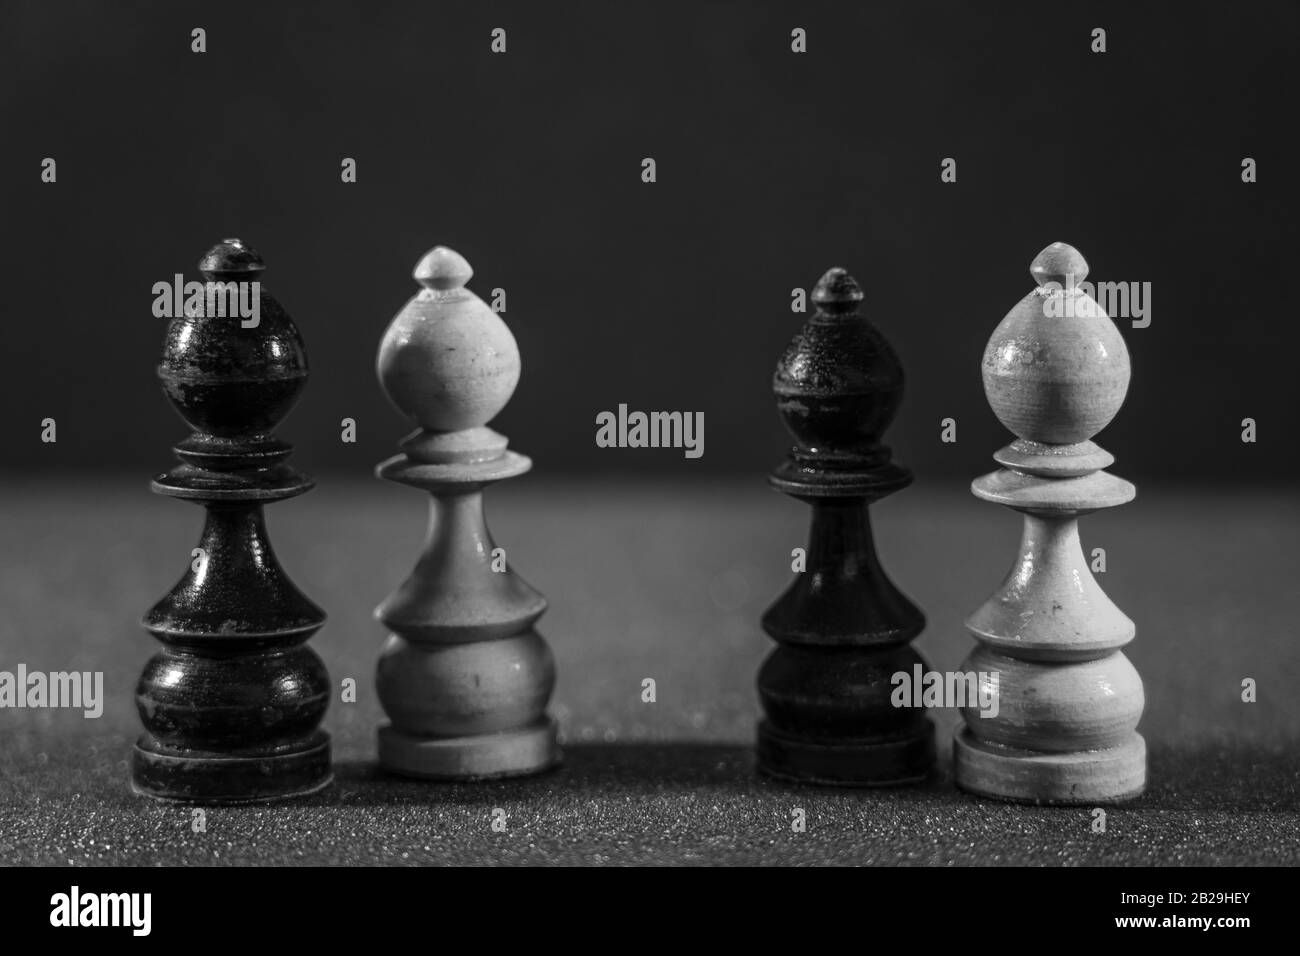 Image Des Pièces d'échecs sur le plateau pour le jeu; style noir et blanc Banque D'Images